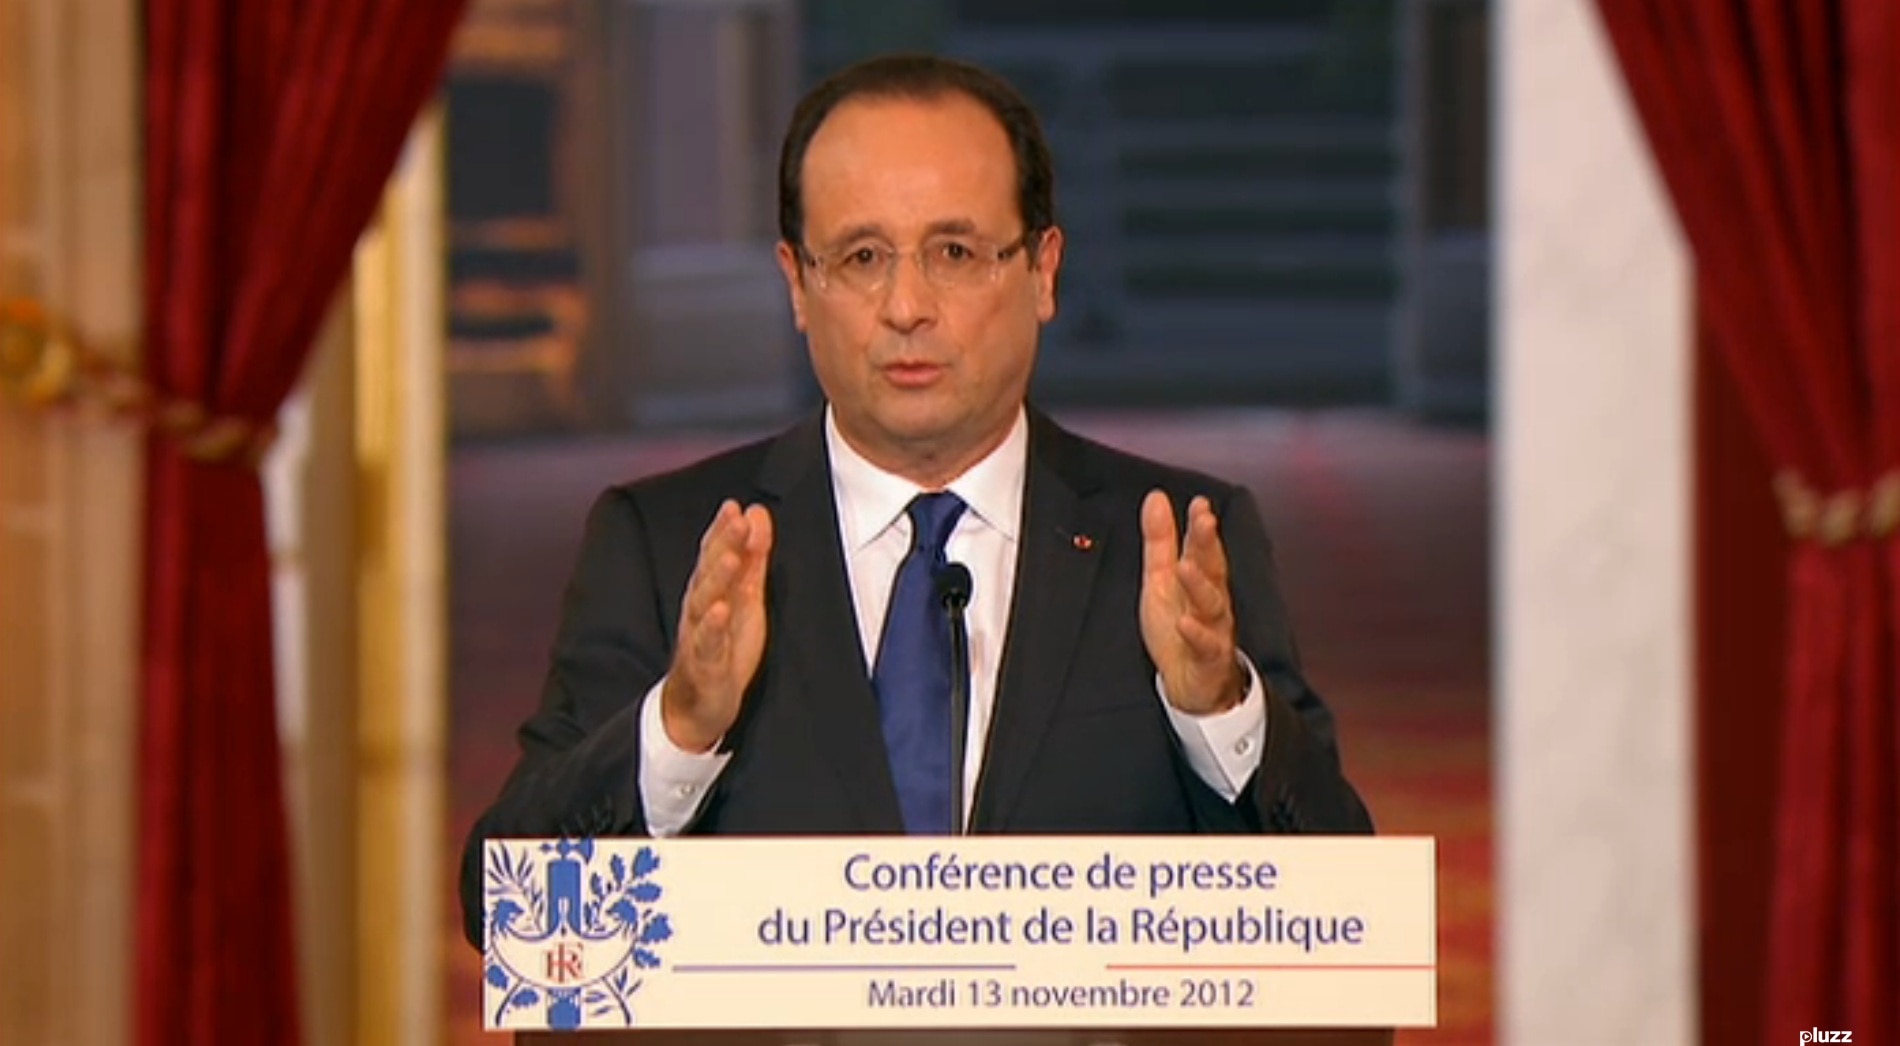 Non, Monsieur le Président, la Métropole de Lyon n’impliquera pas nécessairement des économies